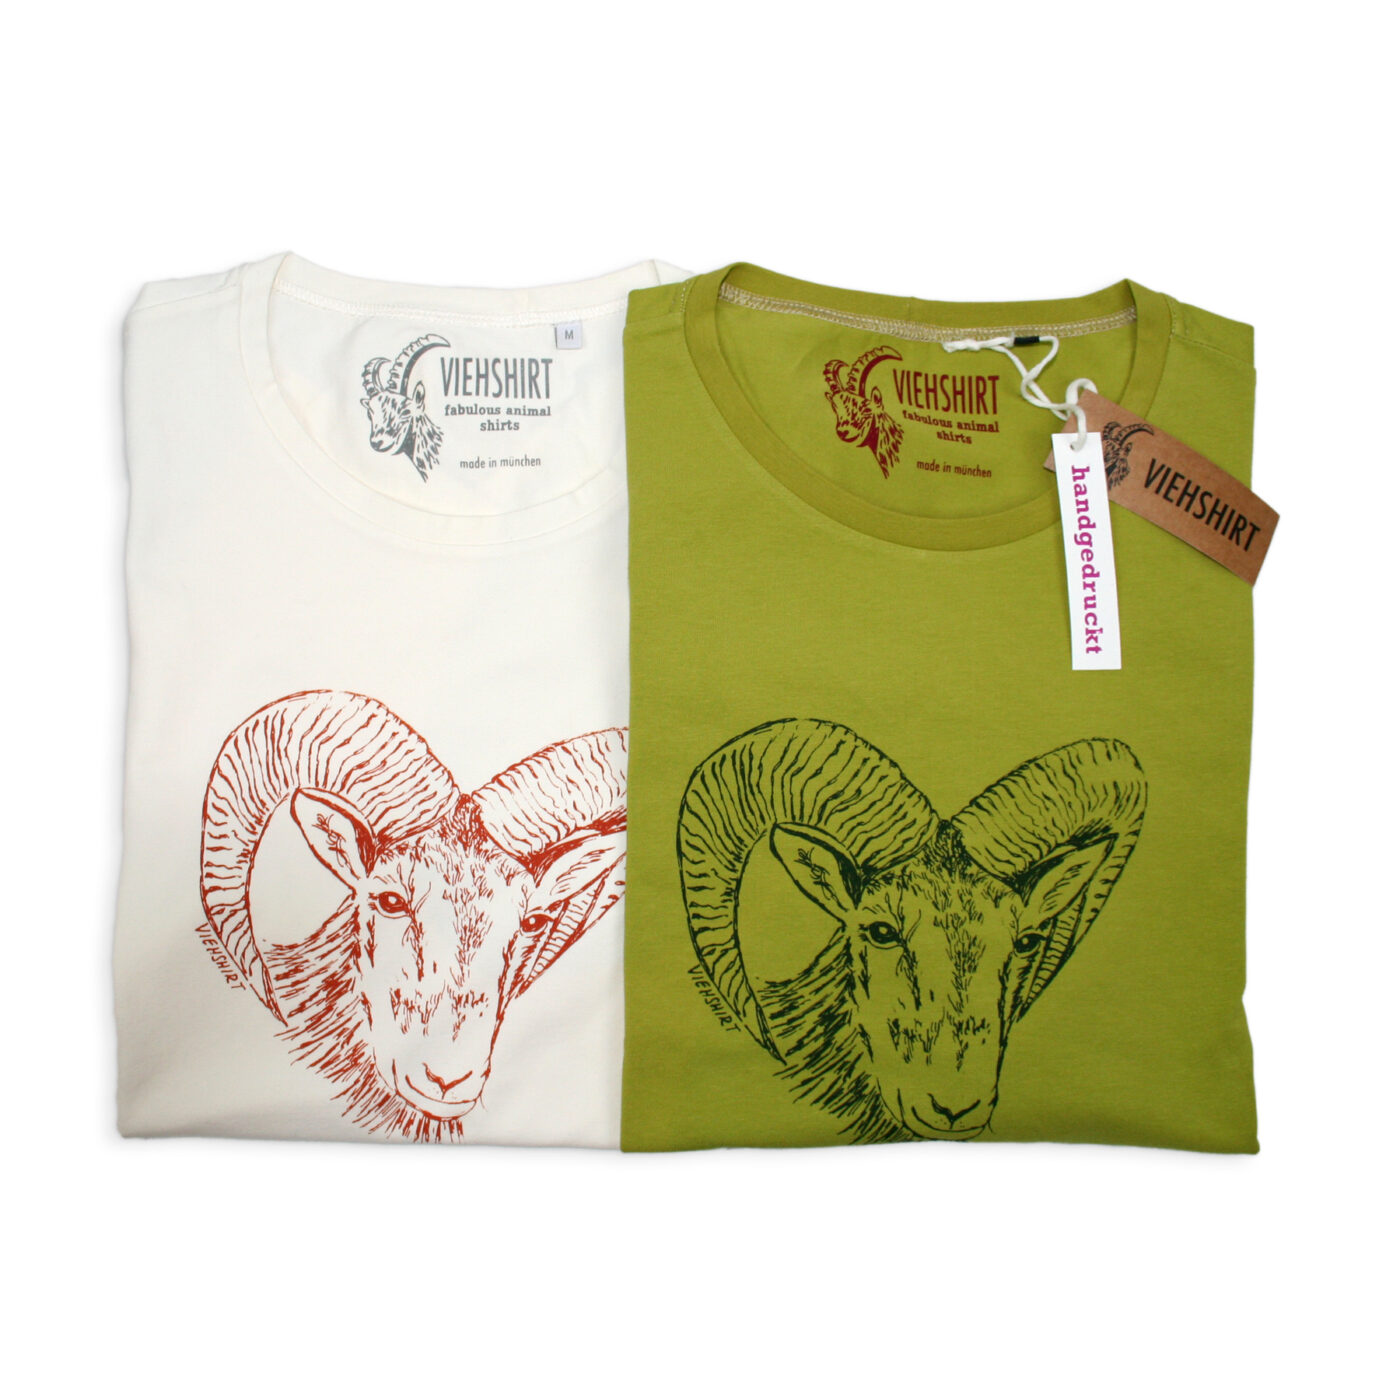 Zwei T-Shirts, eines weiß, eines grün mit Siebdruckmotiv Mufflonkopf